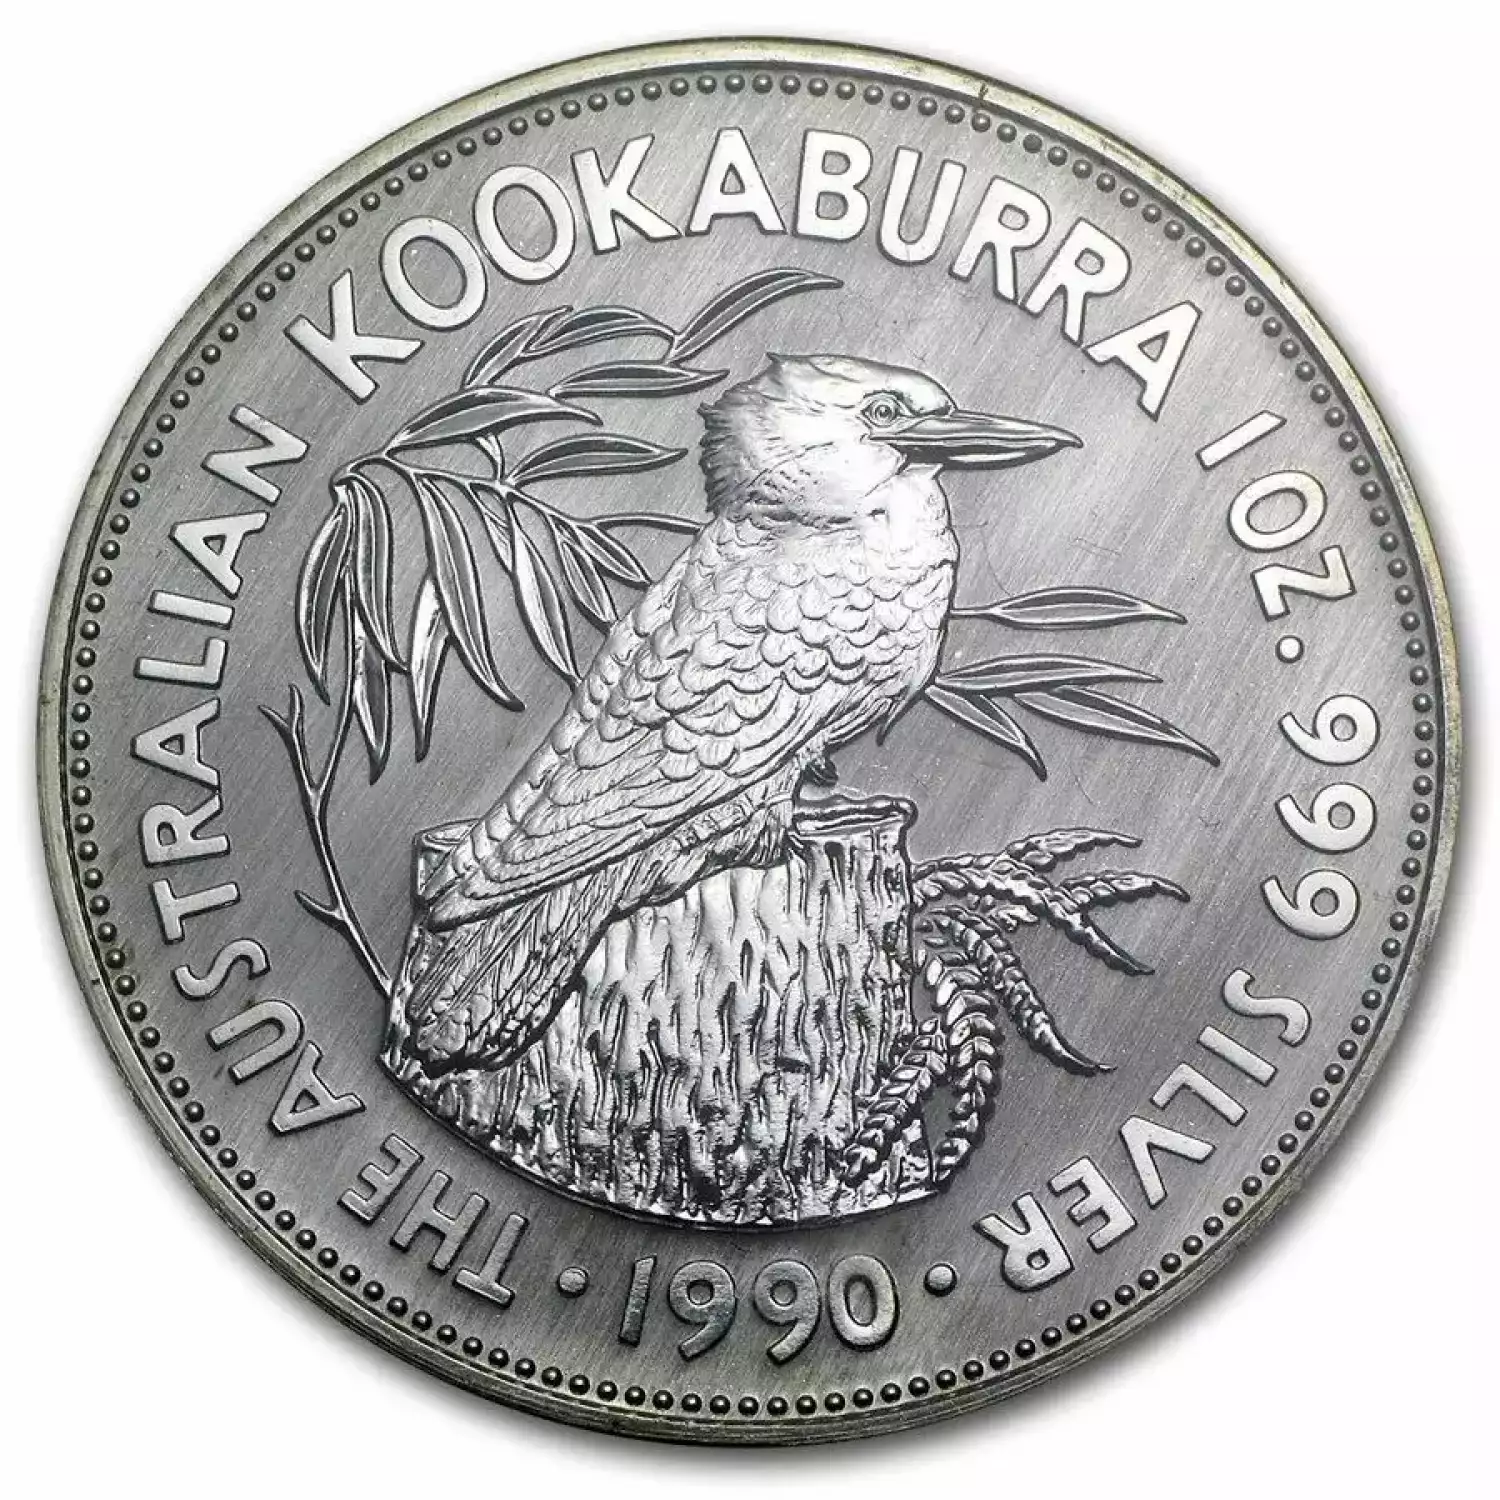 1990 1oz Australian Perth Mint Silver Kookaburra